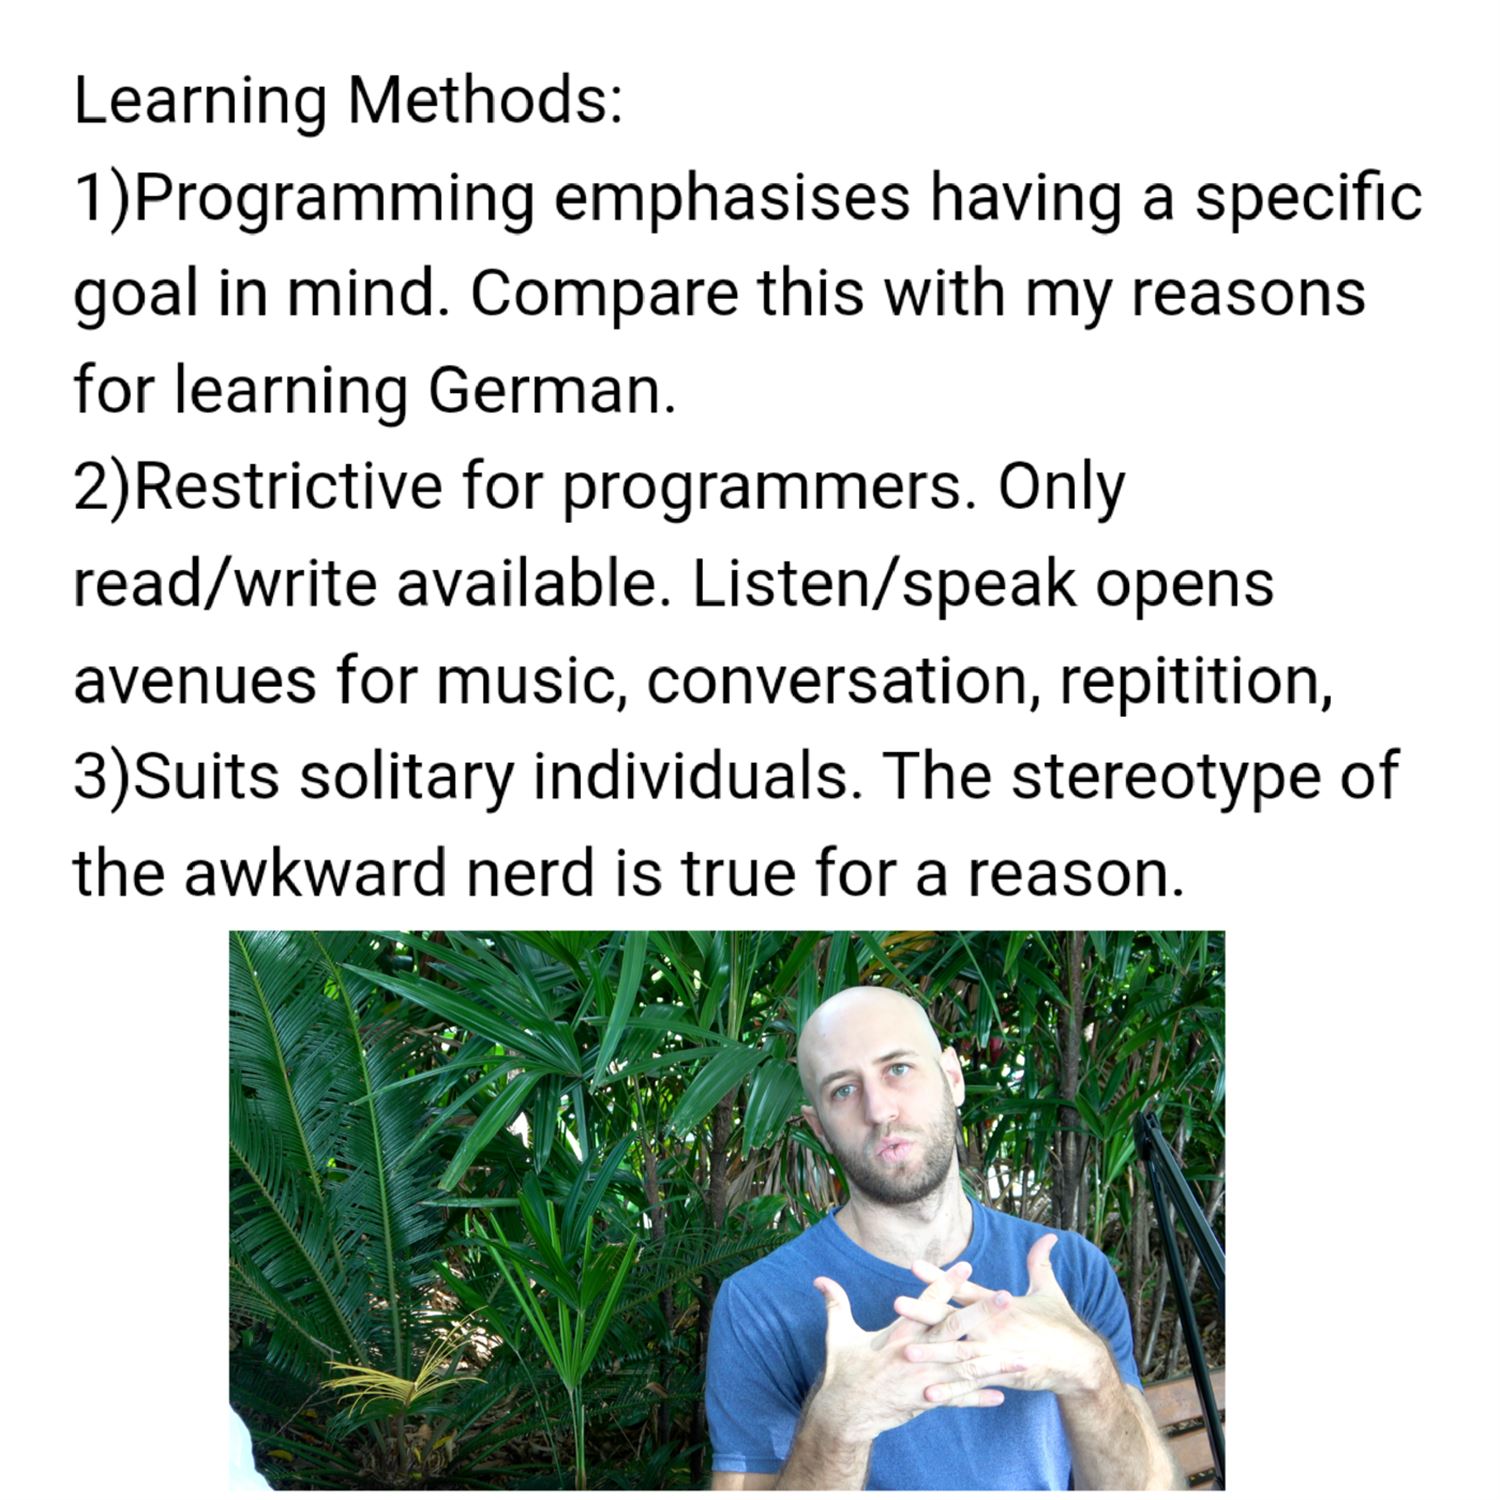 Learning methods